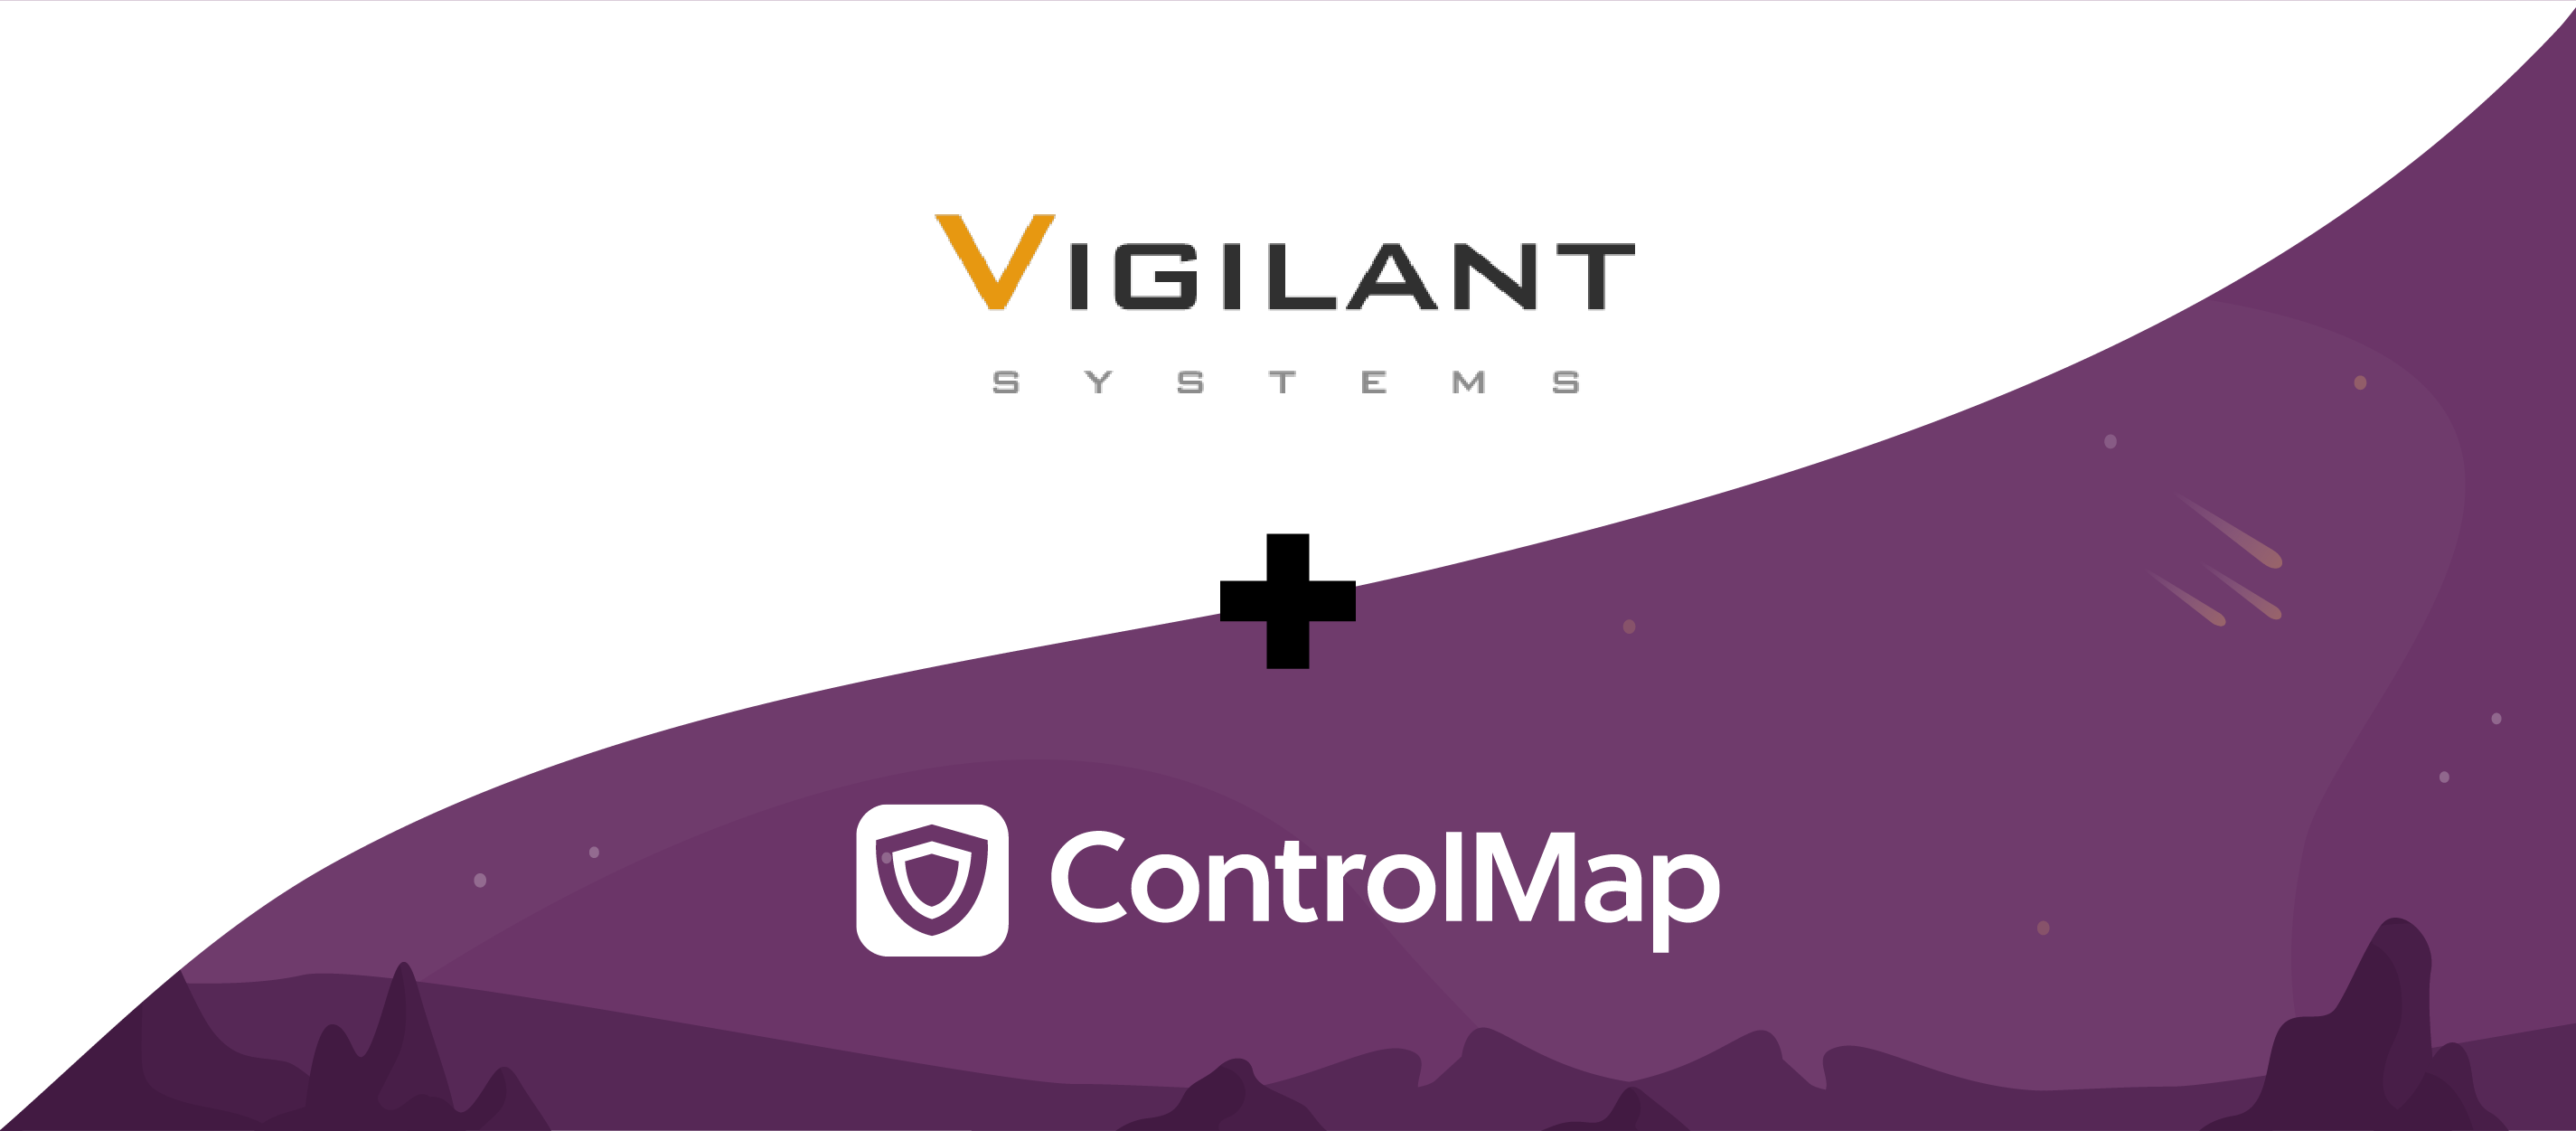 ControlMap, Compliance, Vigilant Systems